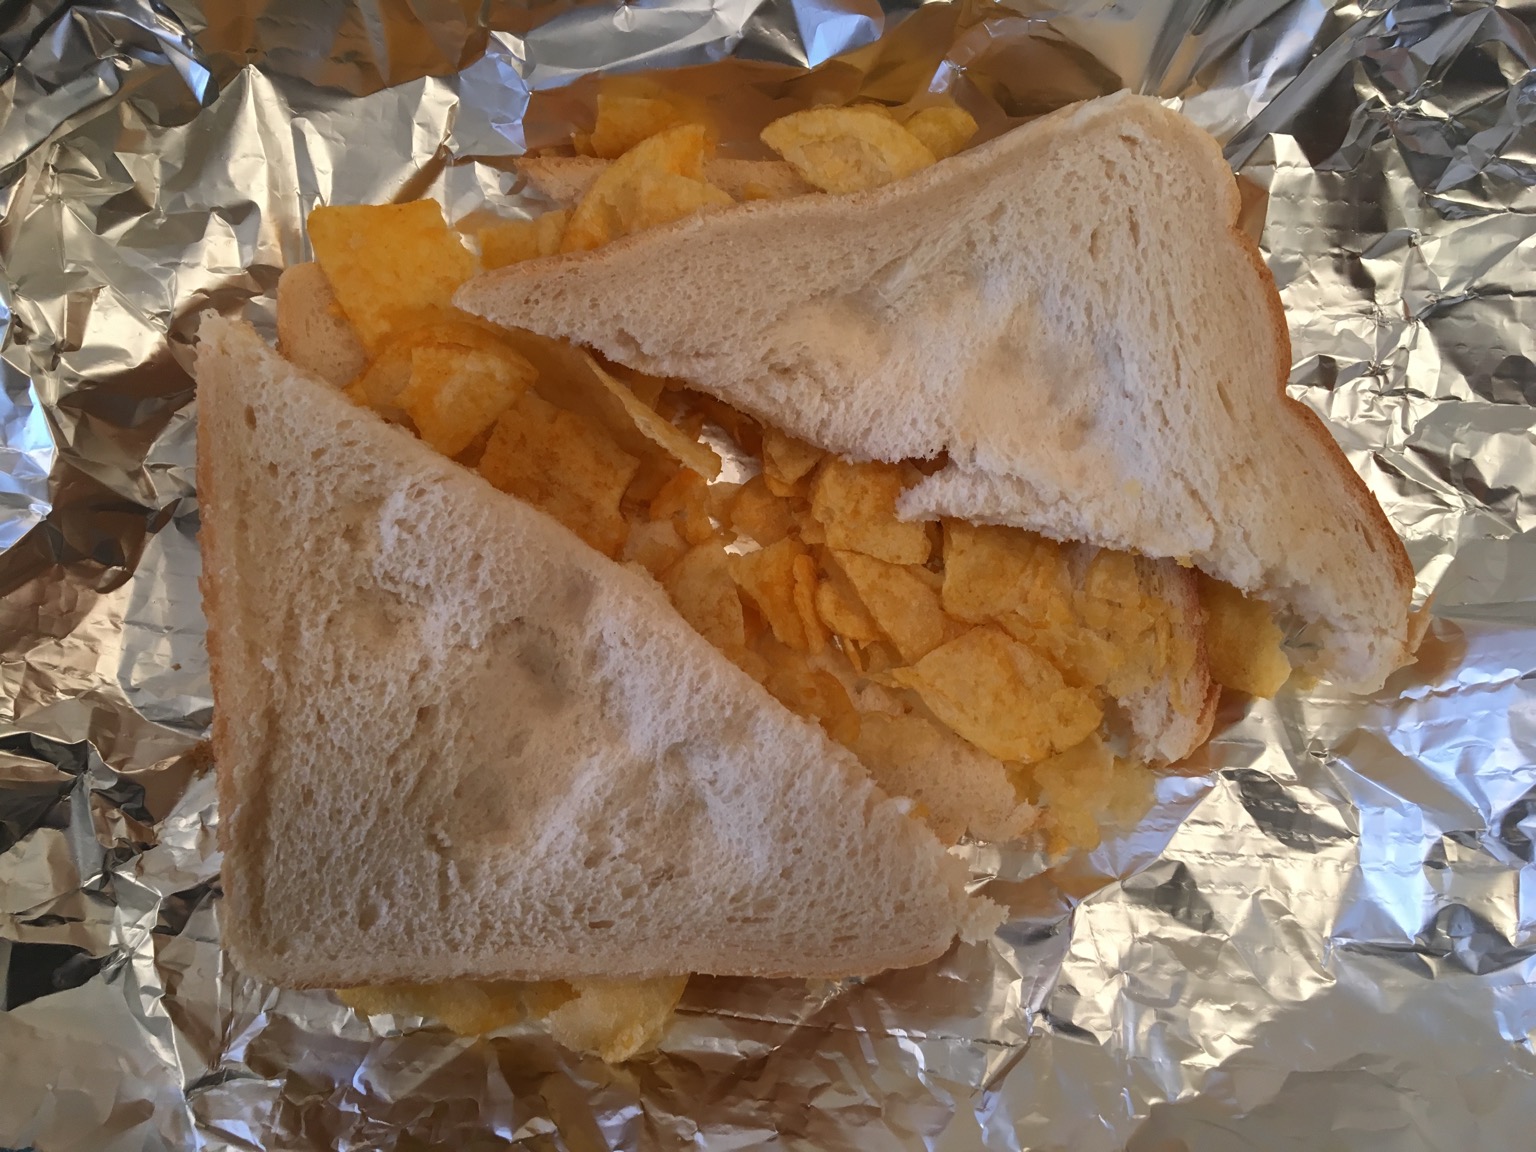 White crisp sandwich with a foil backdrop